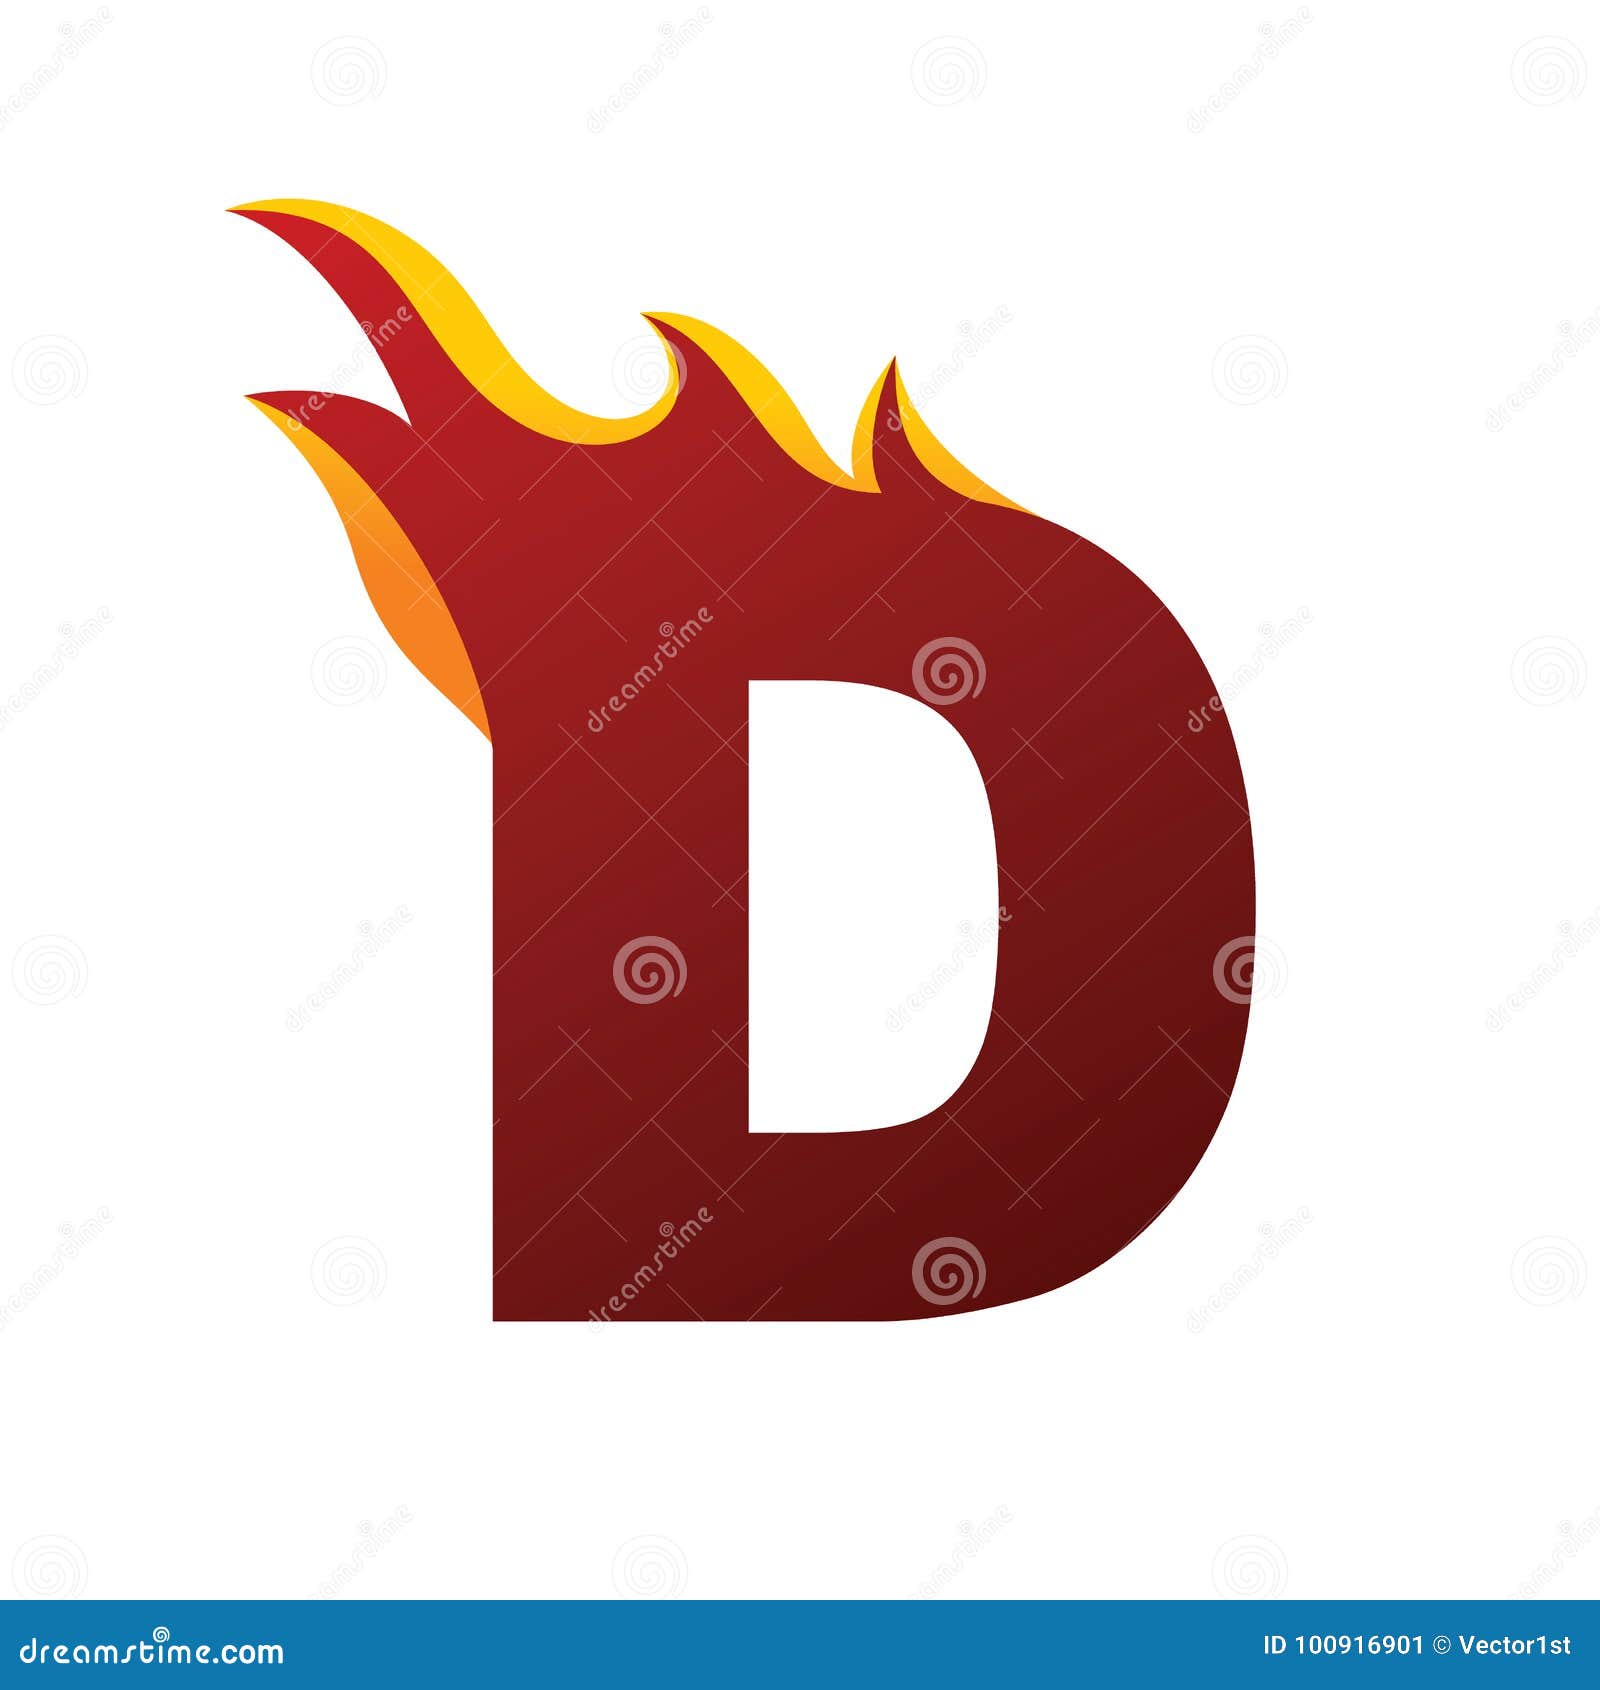 Fire Burn Initial Letter Alphabet Stock Vector - Illustration of logo ...